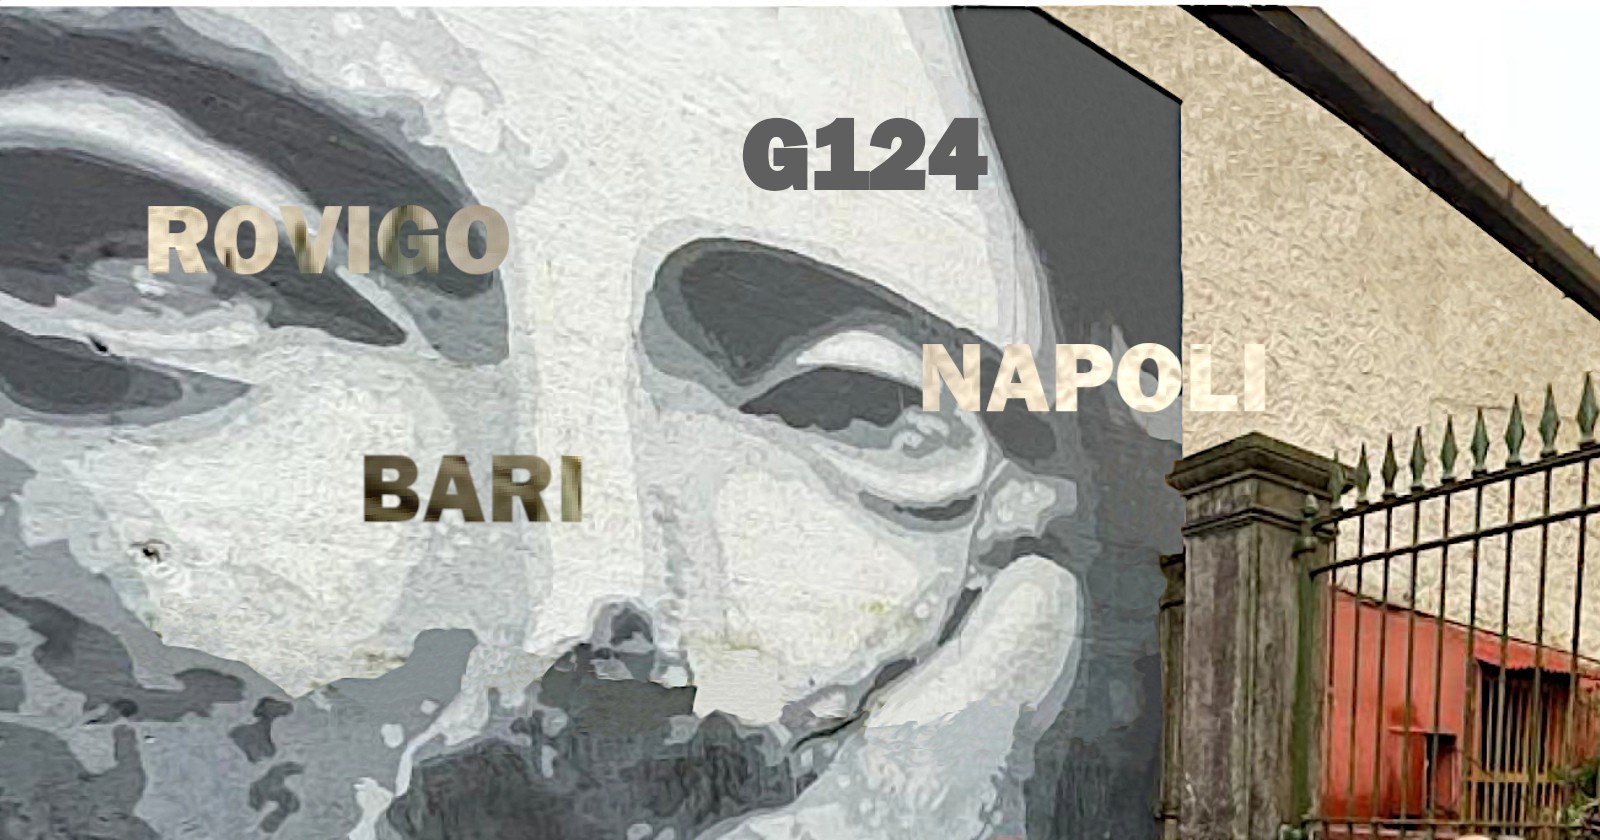 Il G124 di Renzo Piano arriva a Bari, Napoli e Rovigo: 12 giovani all'opera per far rinascere tre vuoti urbani